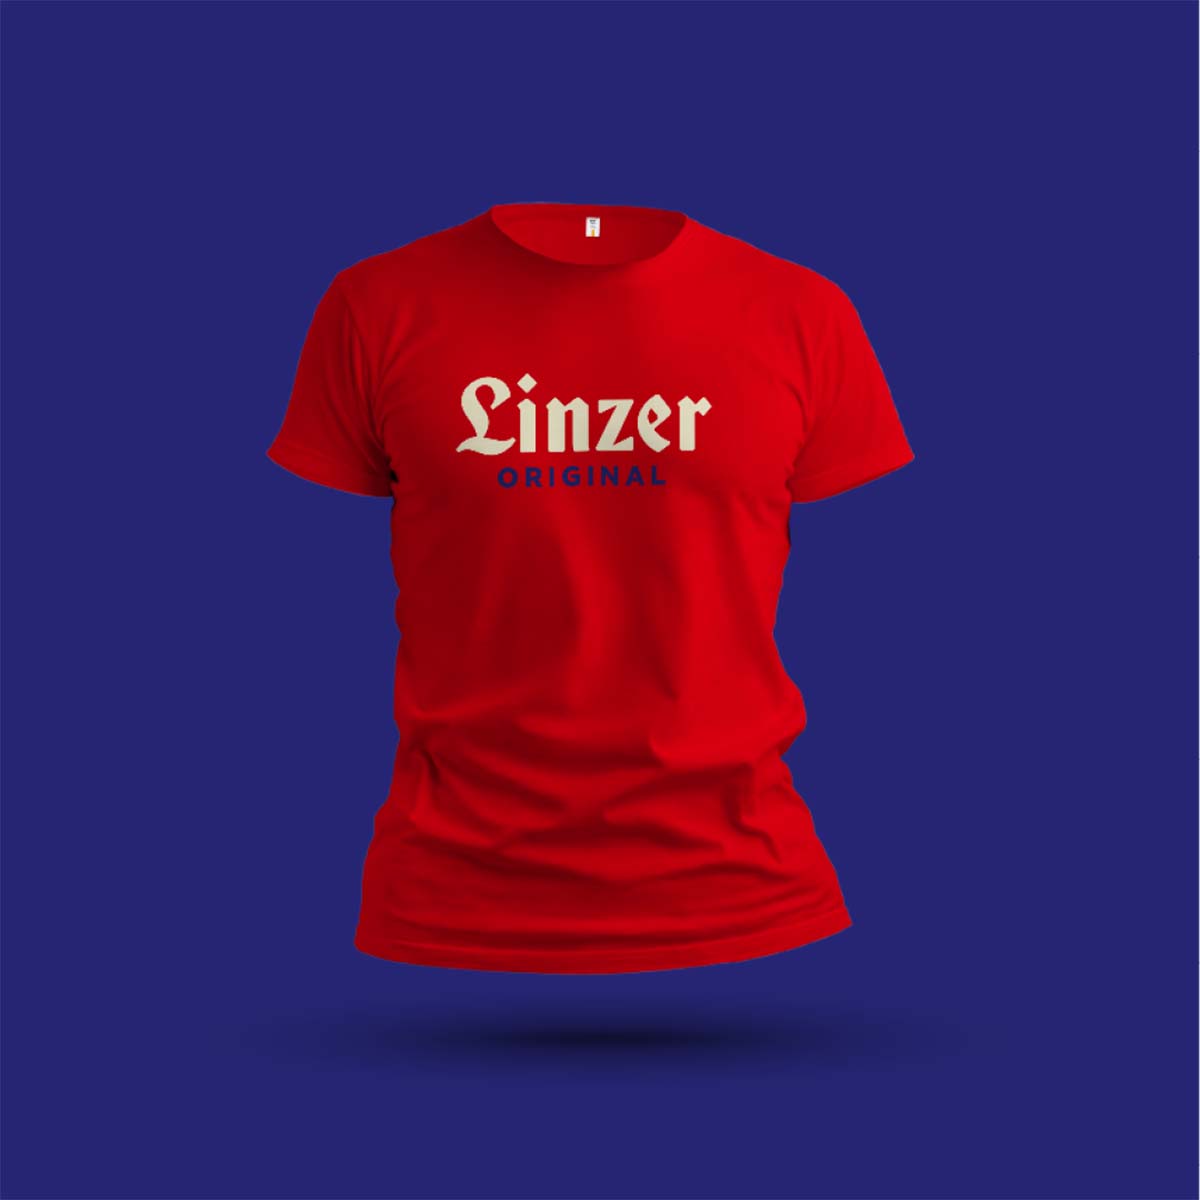 Ein rotes T Shirt mit dem Aufdruck »Linzer Original« auf blauem Grund